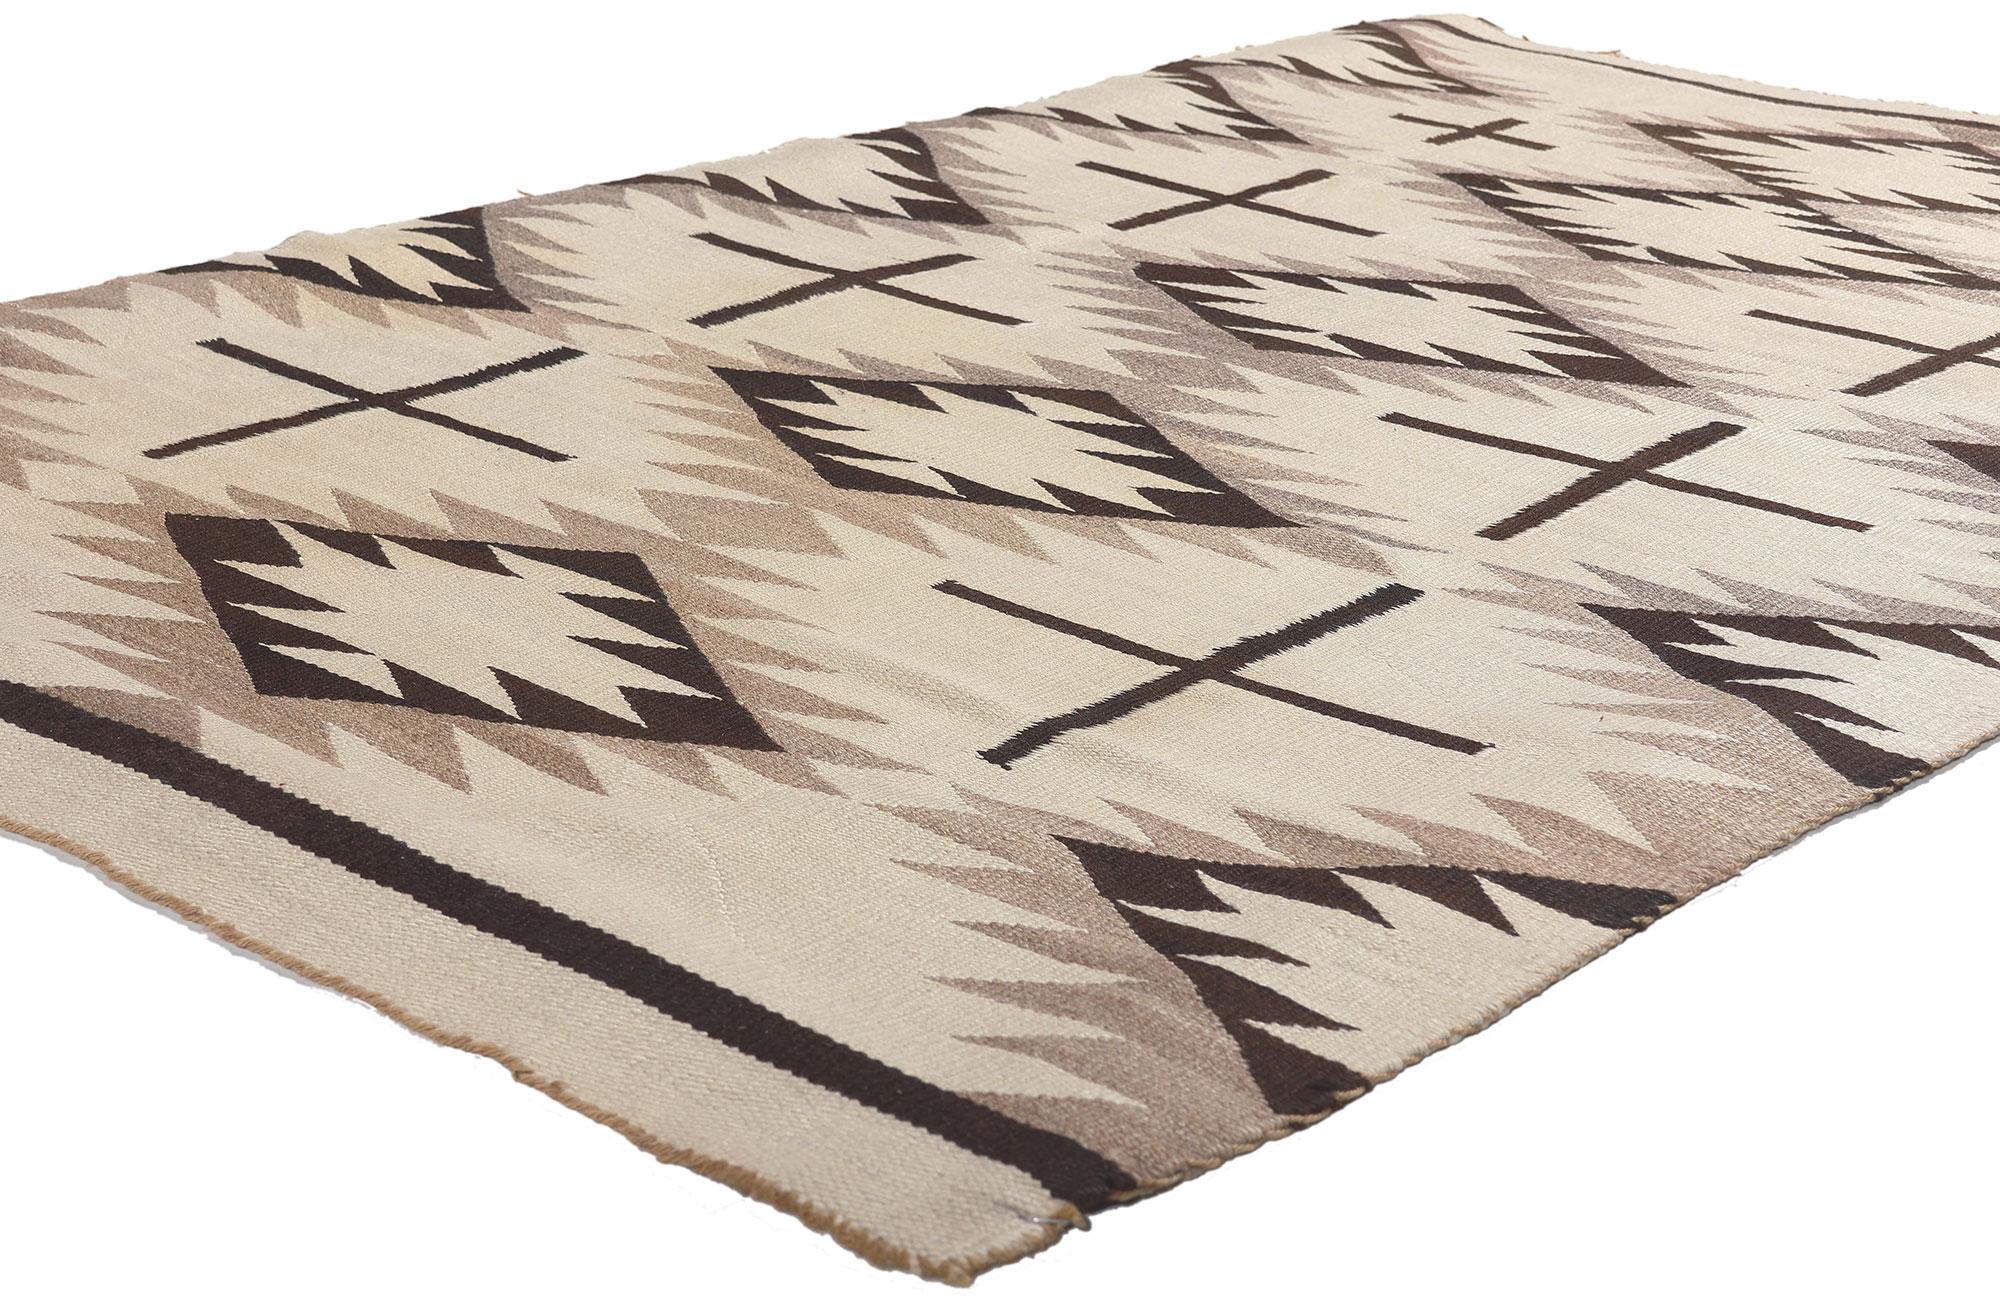 78611 Antiker neutraler Crystal Navajo-Teppich, 03'09 x 05'10.
Dieser handgewebte Crystal Navajo-Teppich im Stil der amerikanischen Ureinwohner besticht durch seine unglaubliche Detailtreue und Struktur. Das auffällige geometrische Muster und die